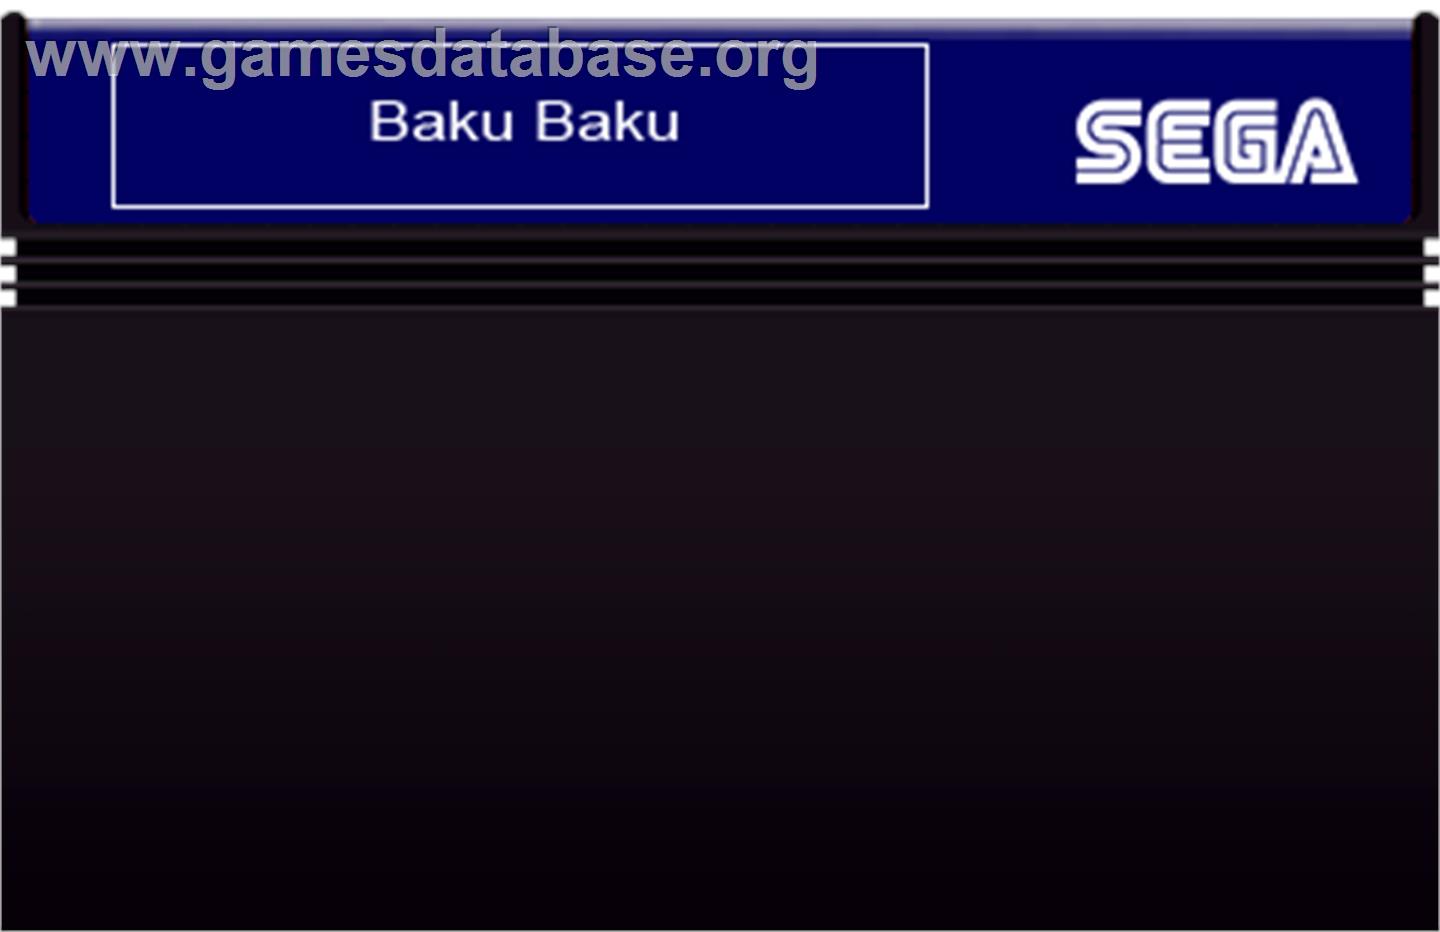 Baku Baku Animal - Sega Master System - Artwork - Cartridge